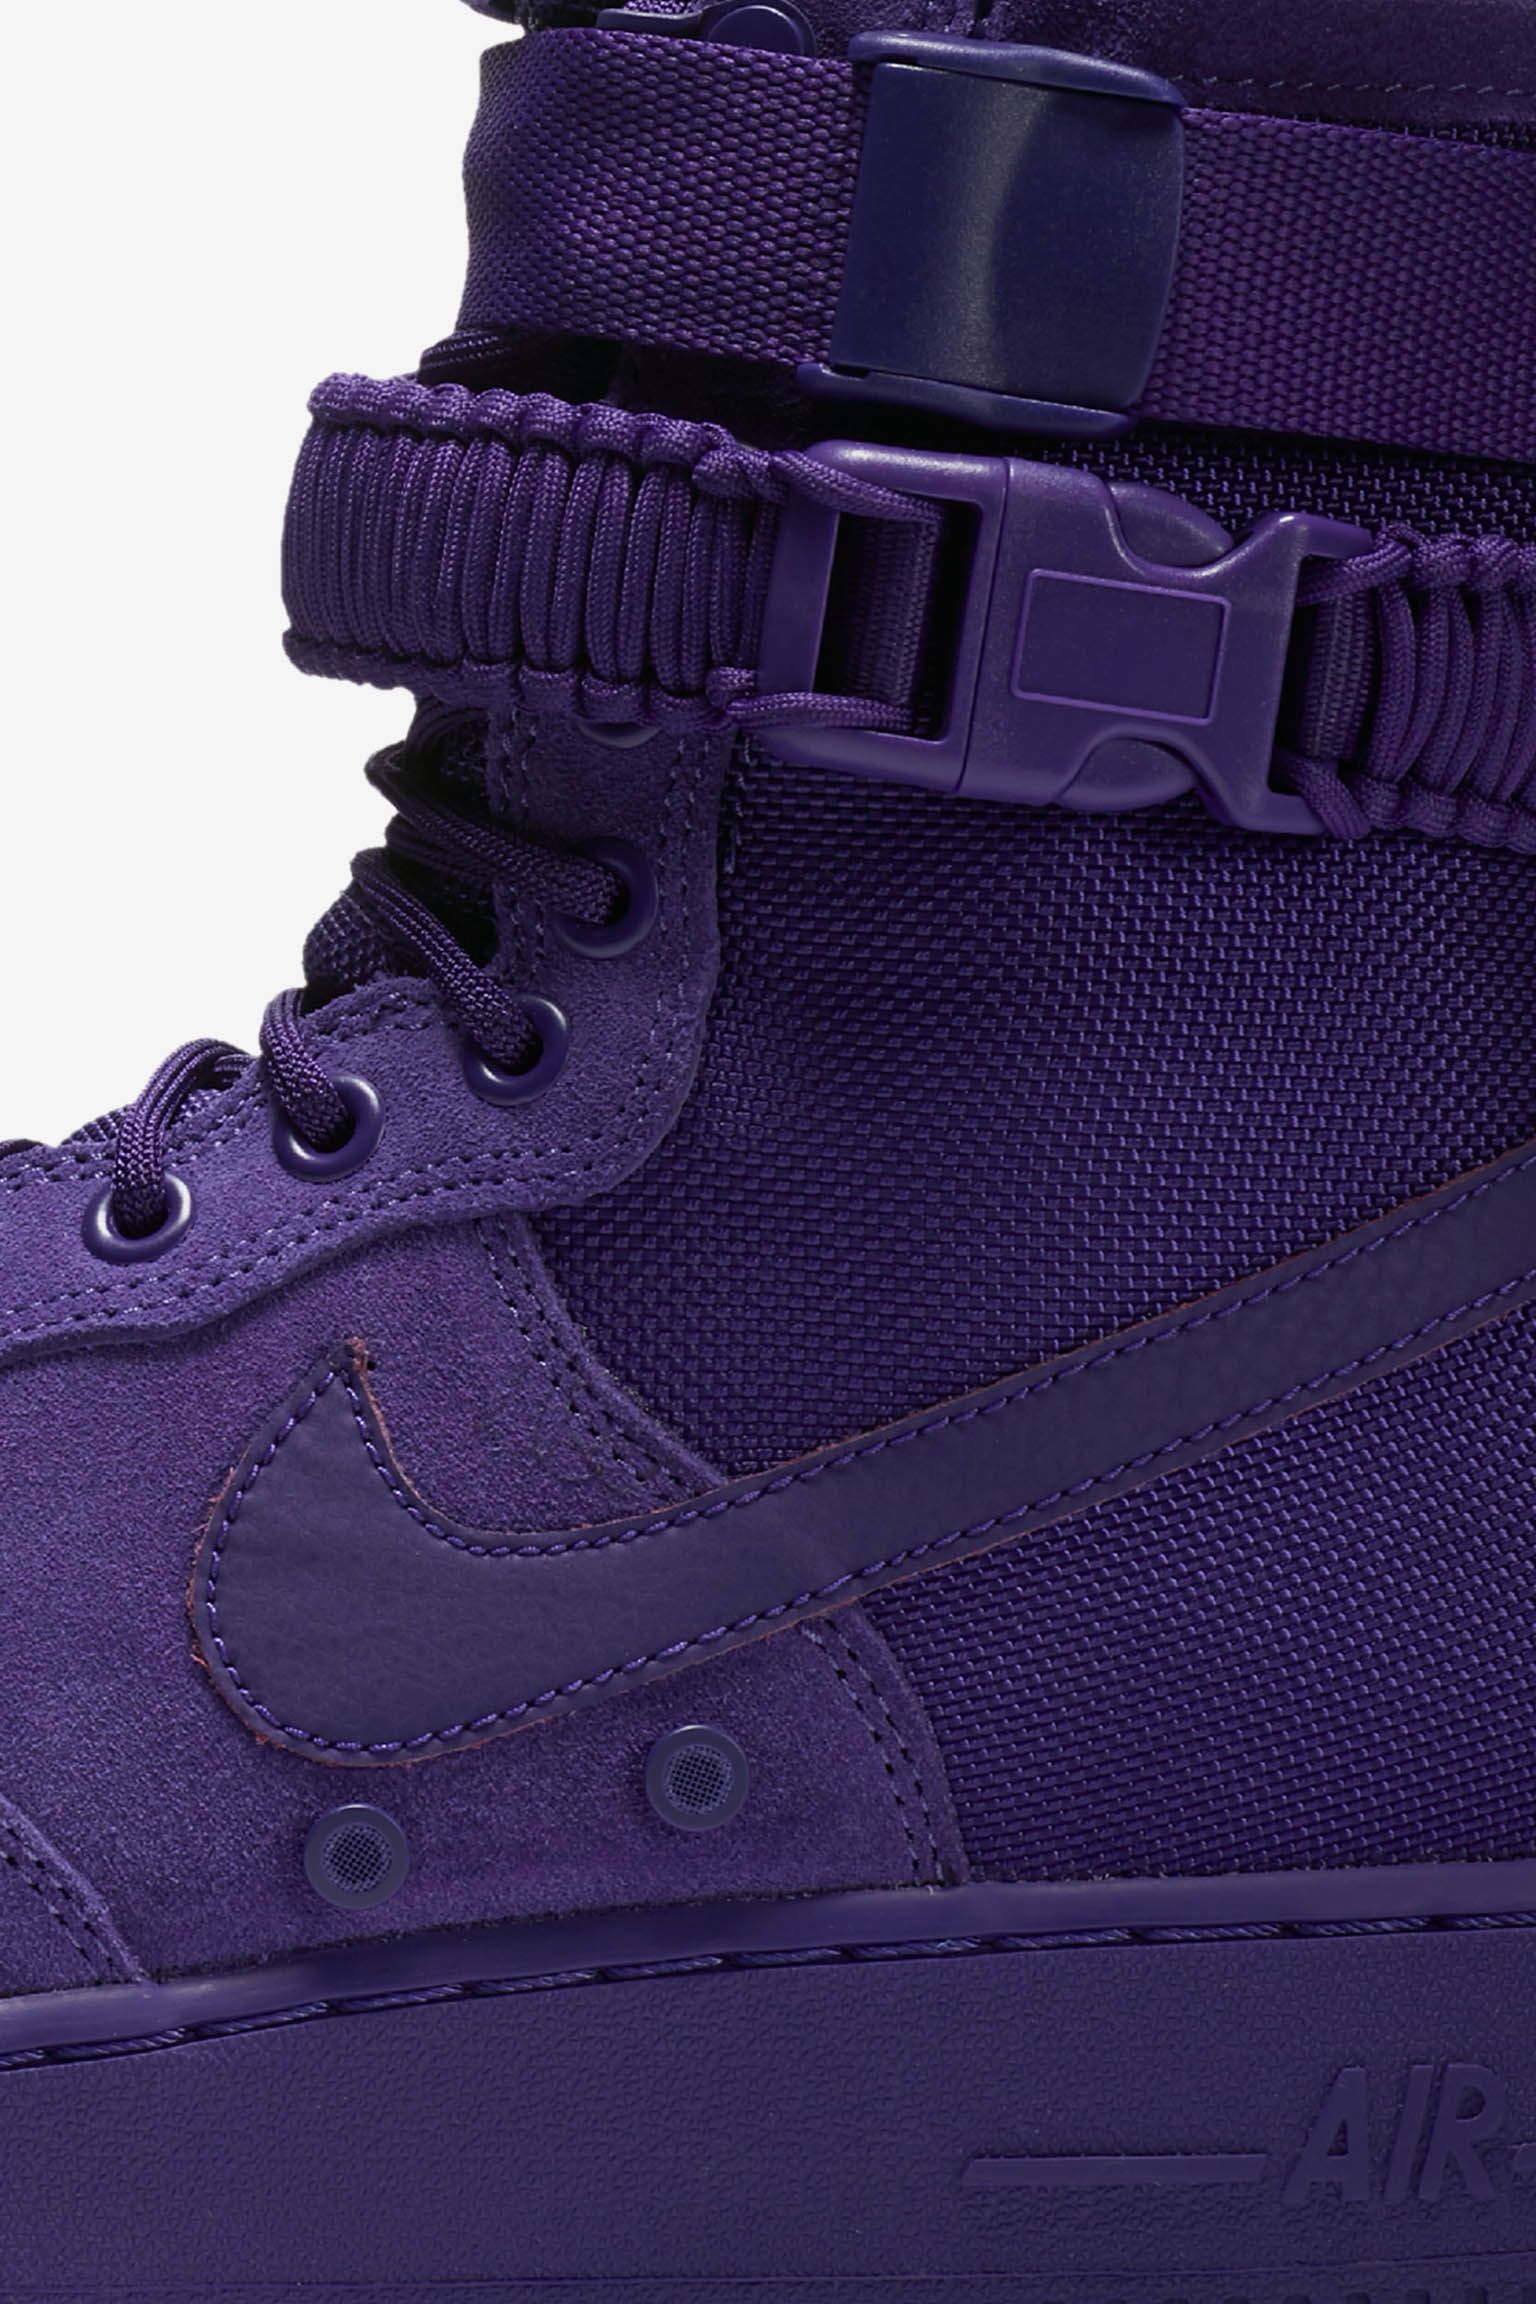 sf air force 1 purple